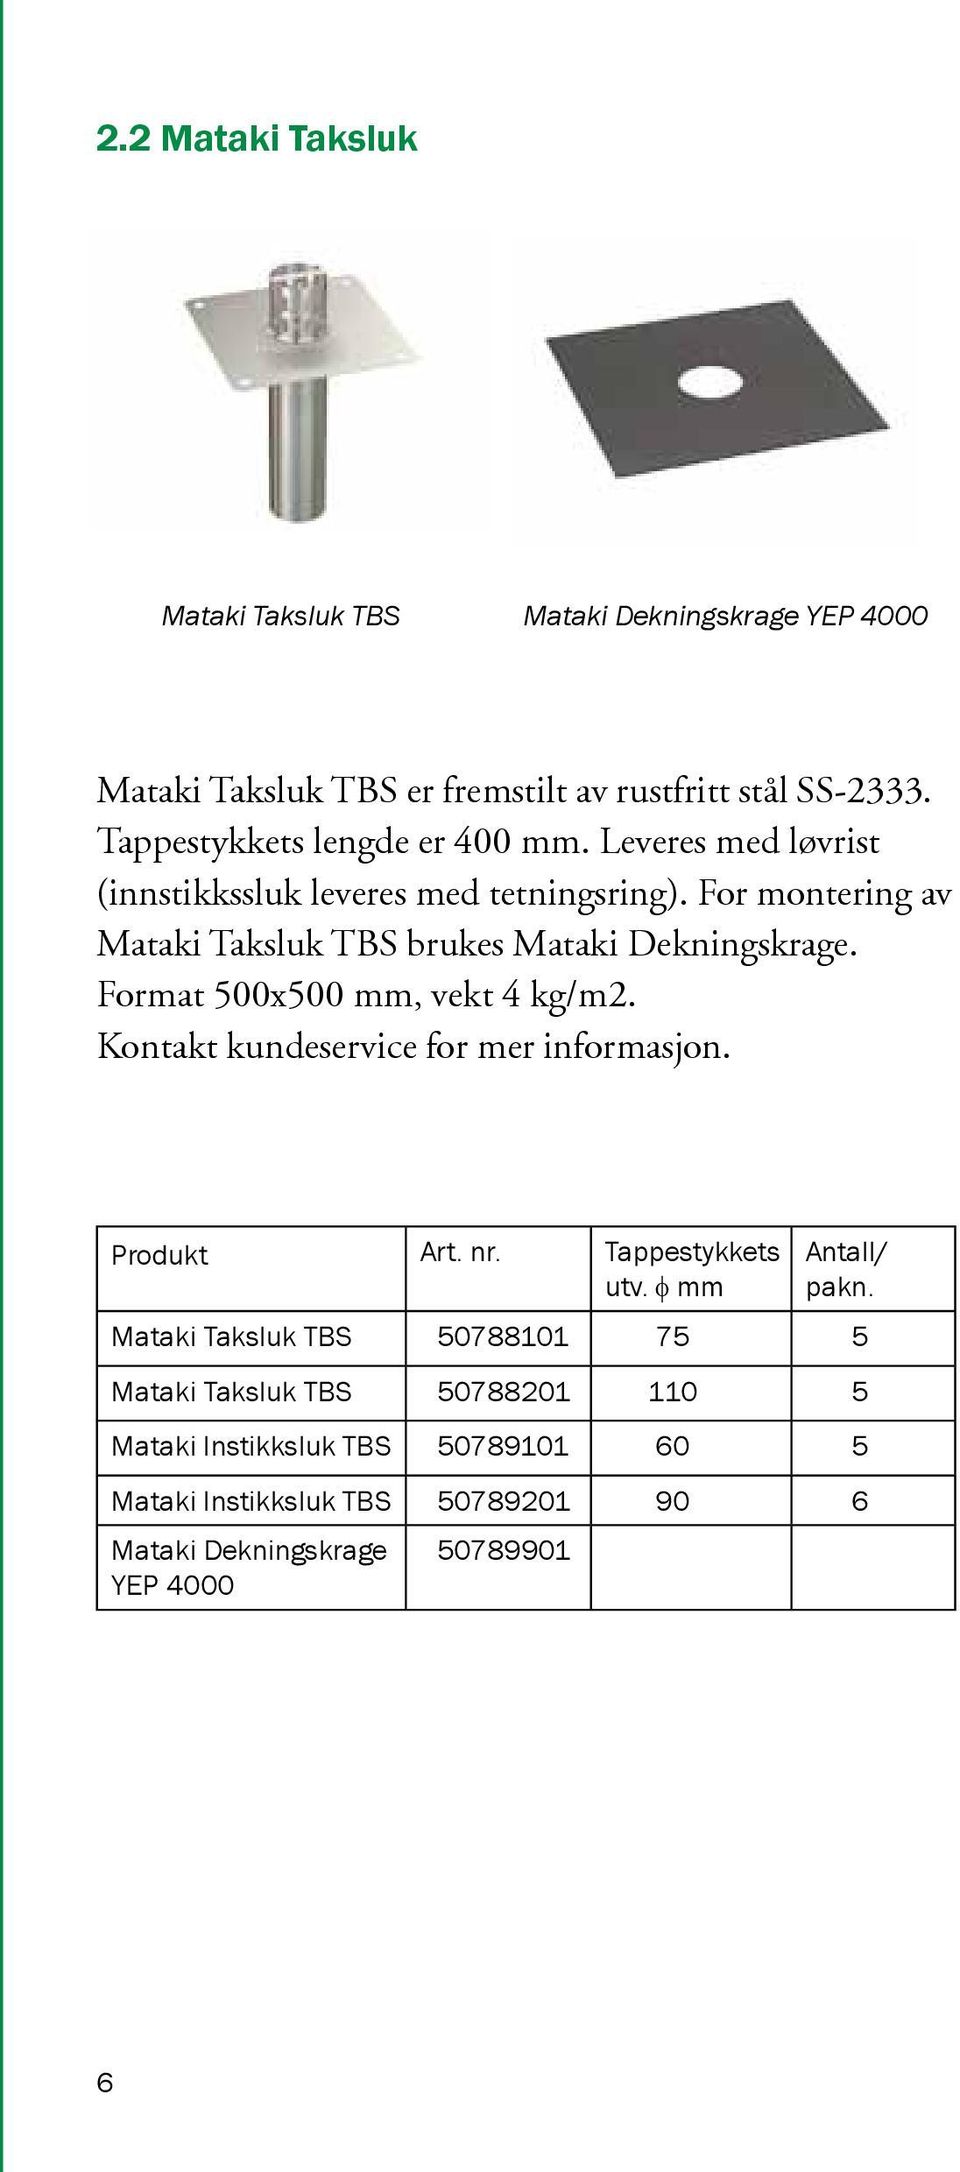 For montering av Mataki Taksluk TBS brukes Mataki Dekningskrage. Format 500x500 mm, vekt 4 kg/m2. Kontakt kundeservice for mer informasjon.